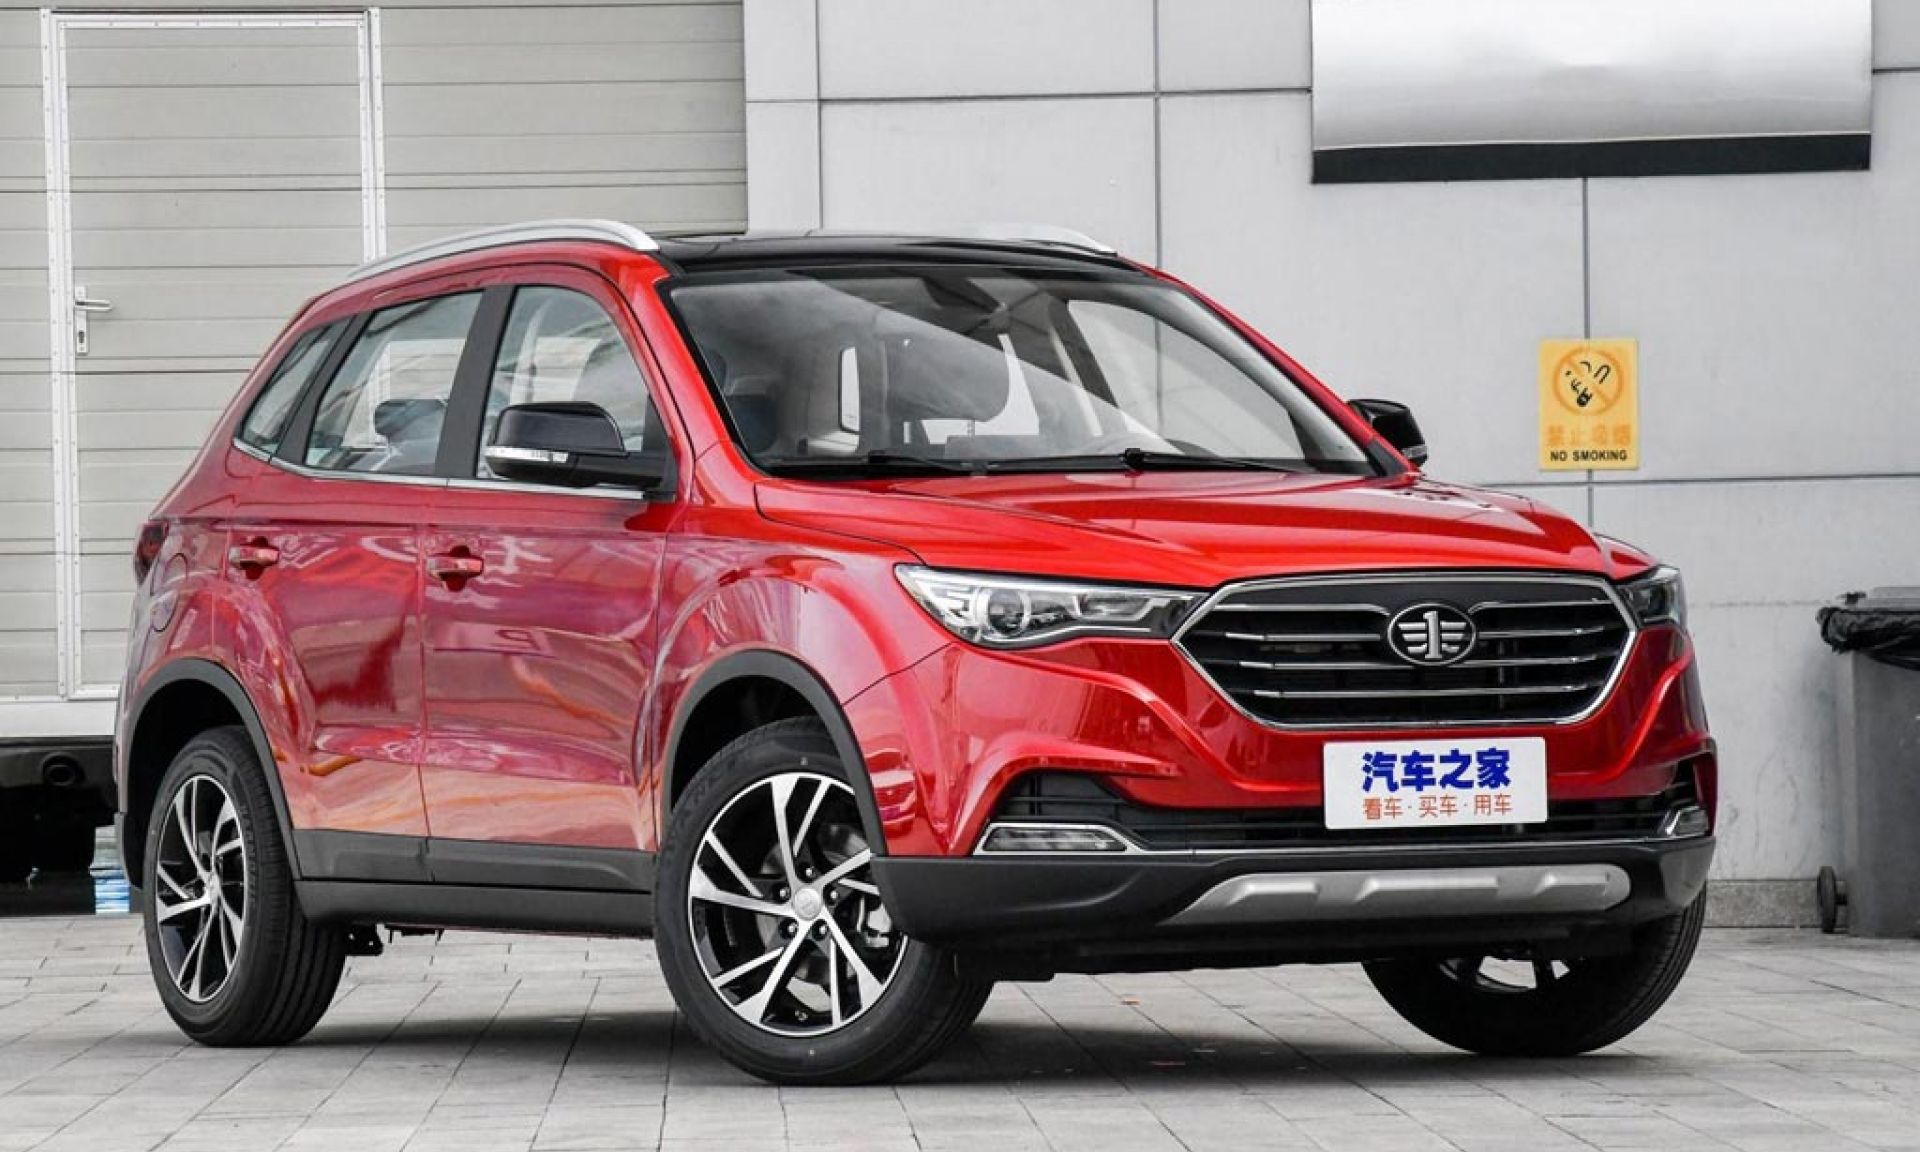 Китайские автомобили отзывы владельцев 2019 год: отзывы о Chery, Geely и Haval